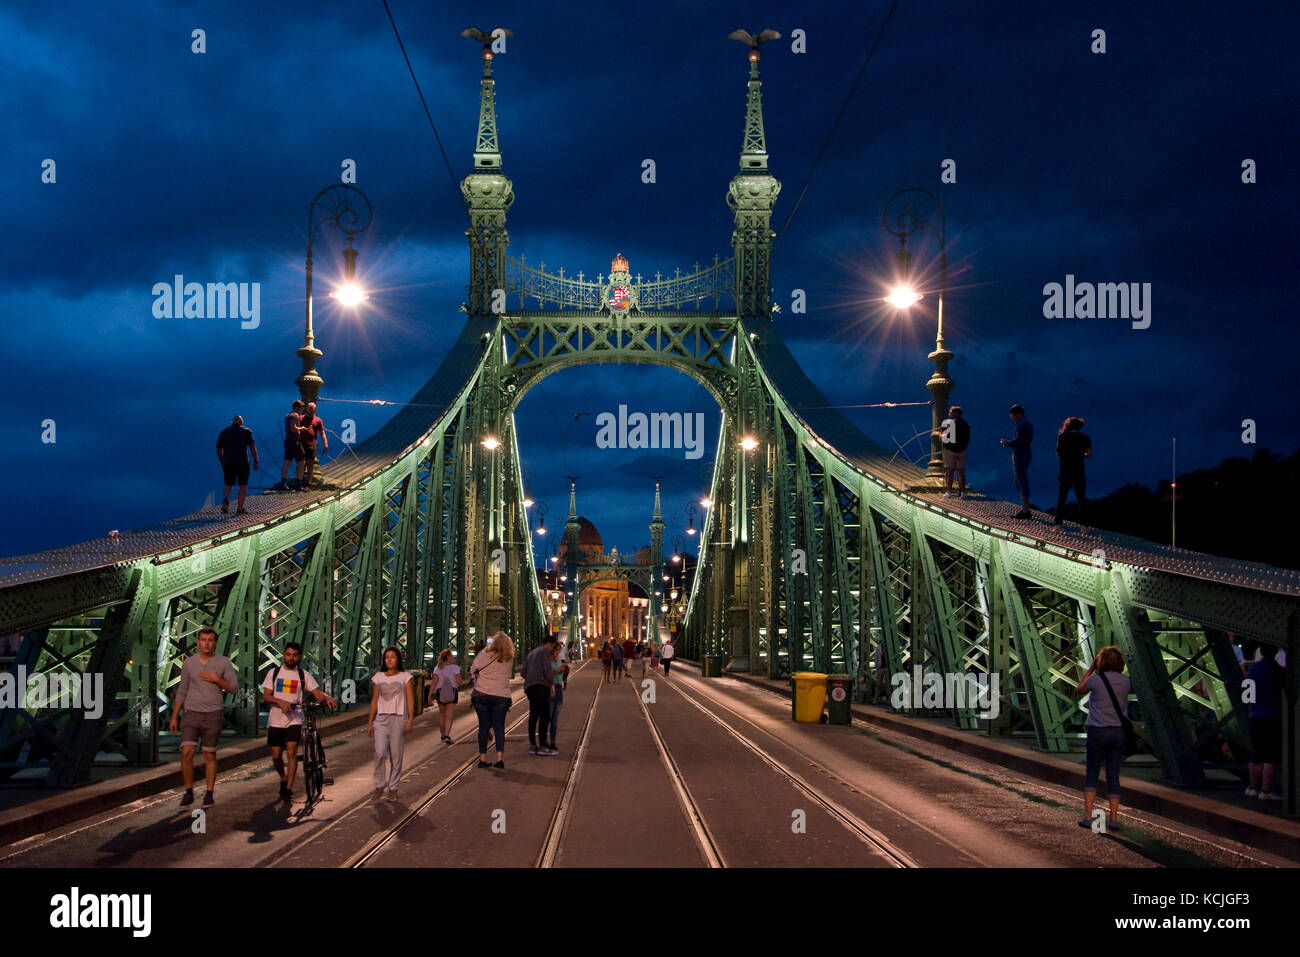 Il Ponte della libertà di Budapest è ottocentionalmente chiuso a tutti i traffici, dove le persone possono camminare e salire su di esso - a volte con feste improvvisate. Foto Stock